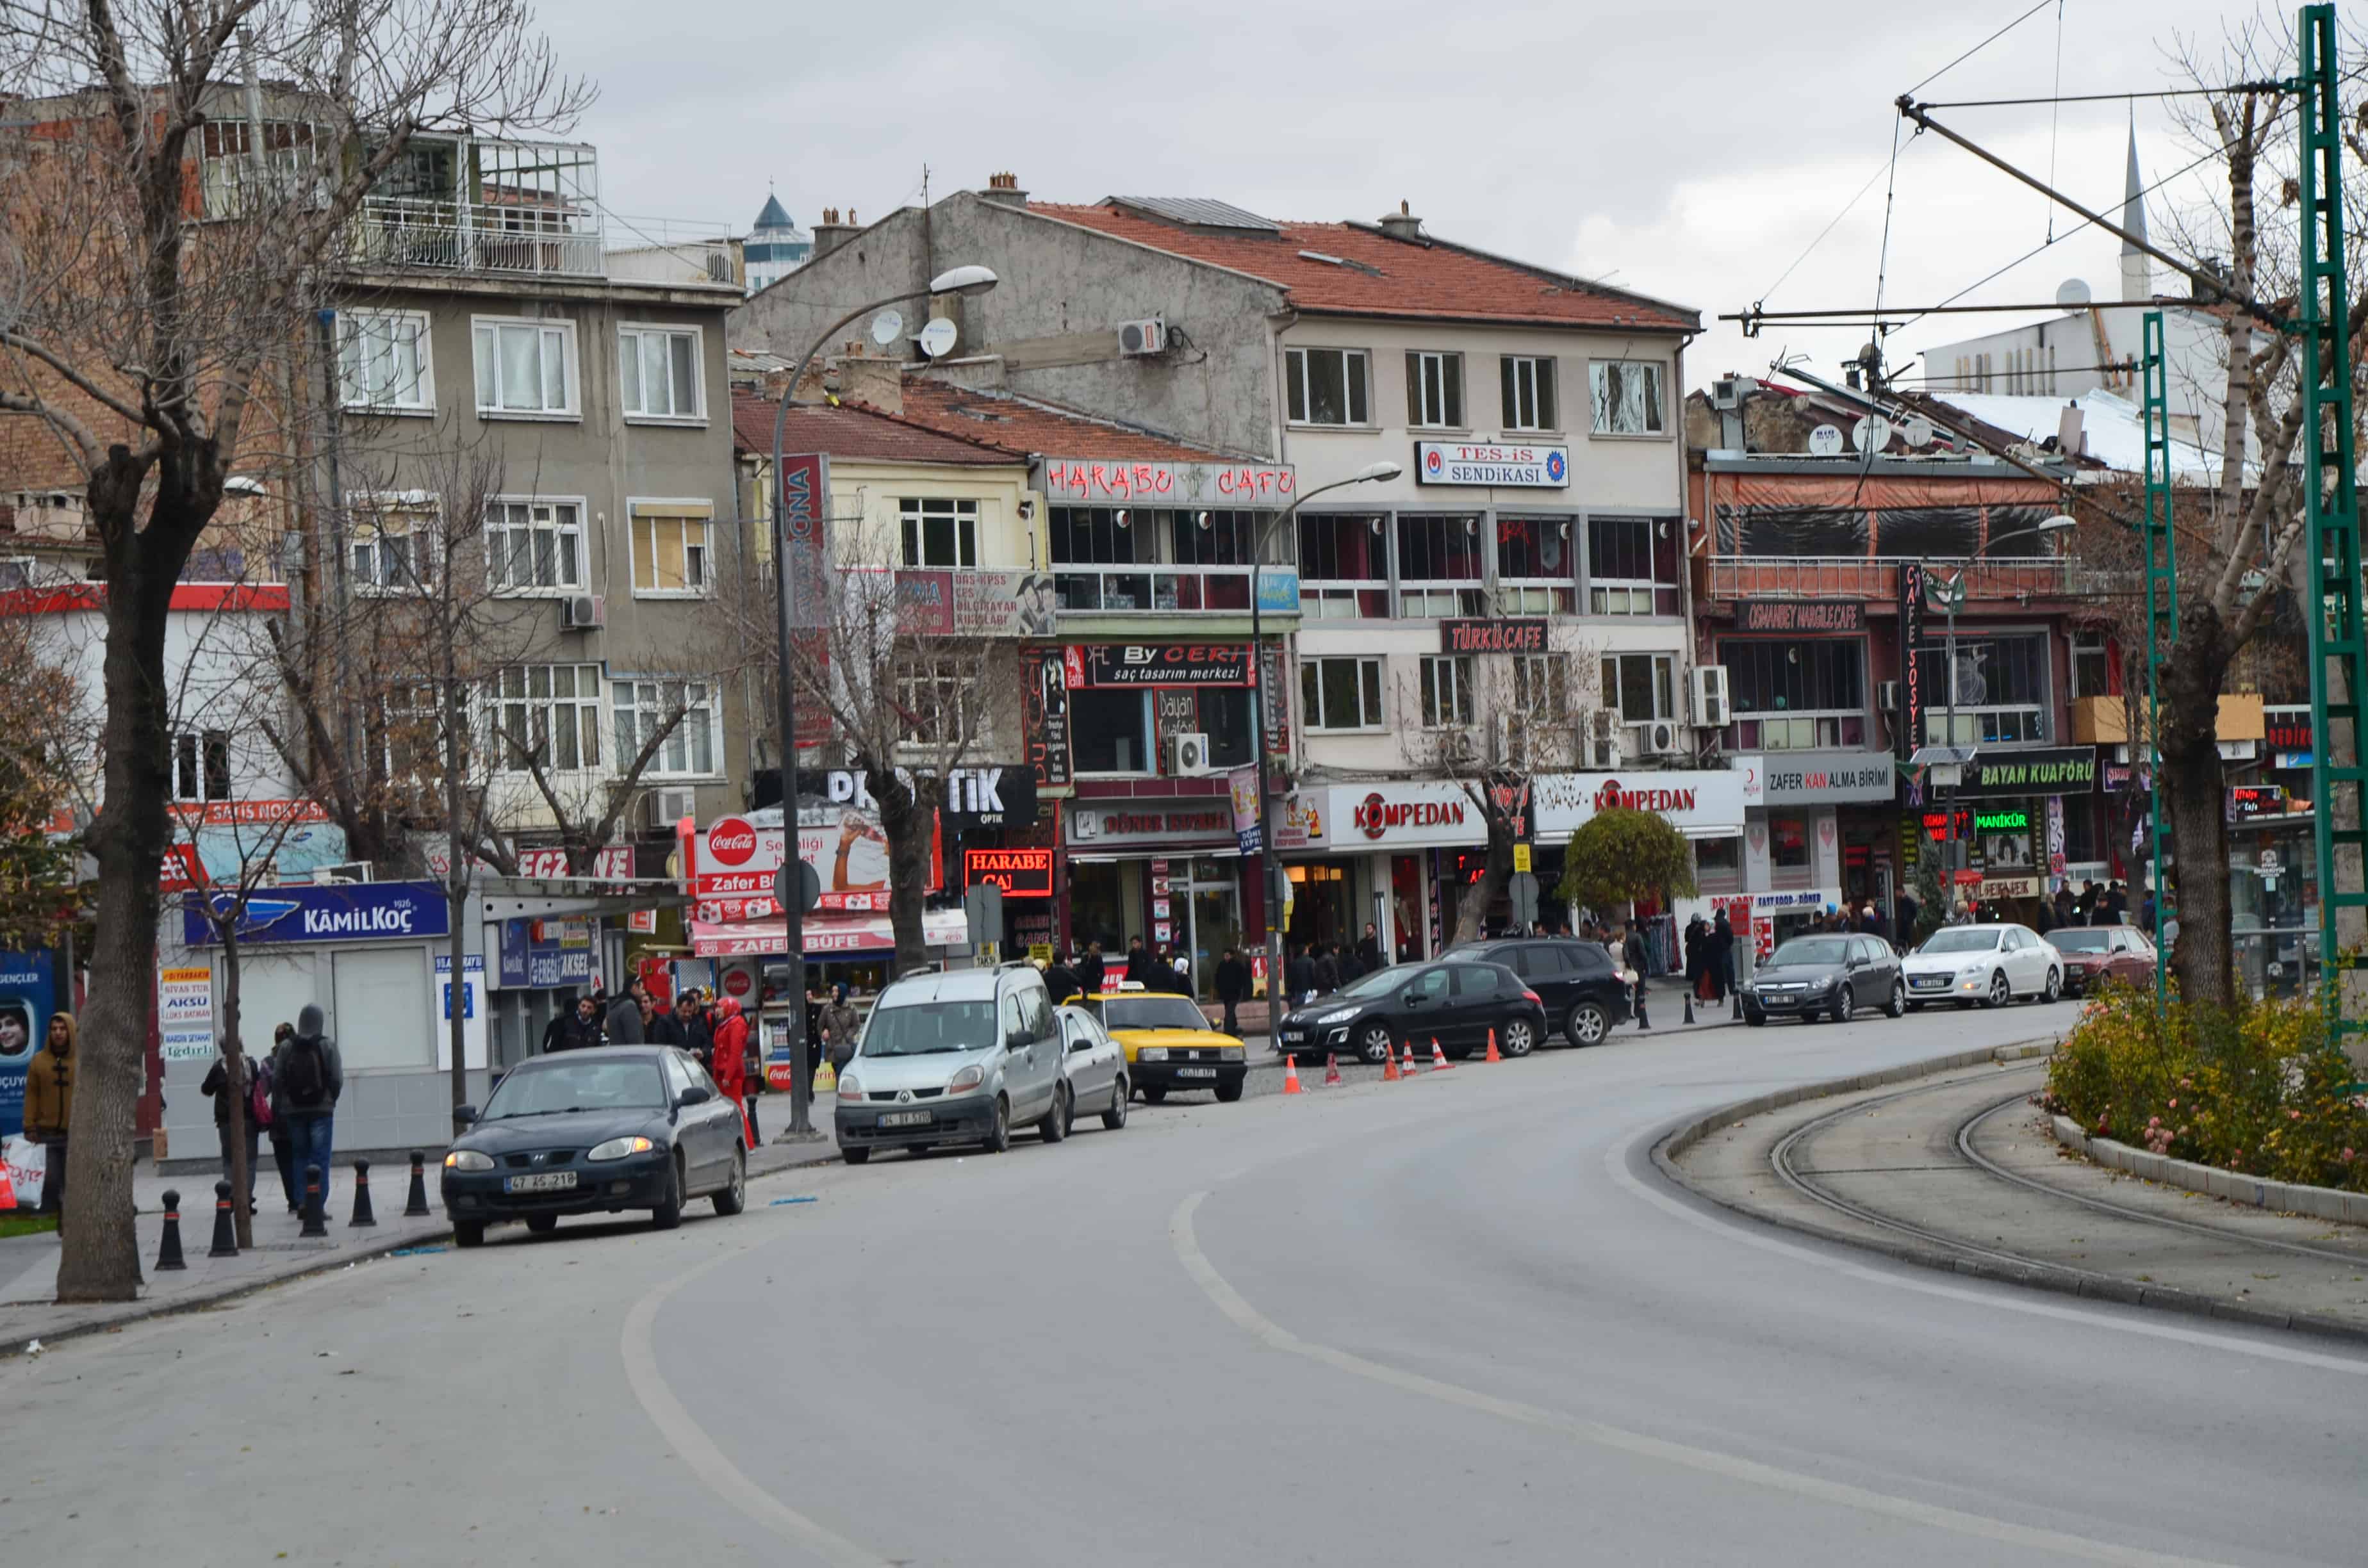 Konya, Turkey